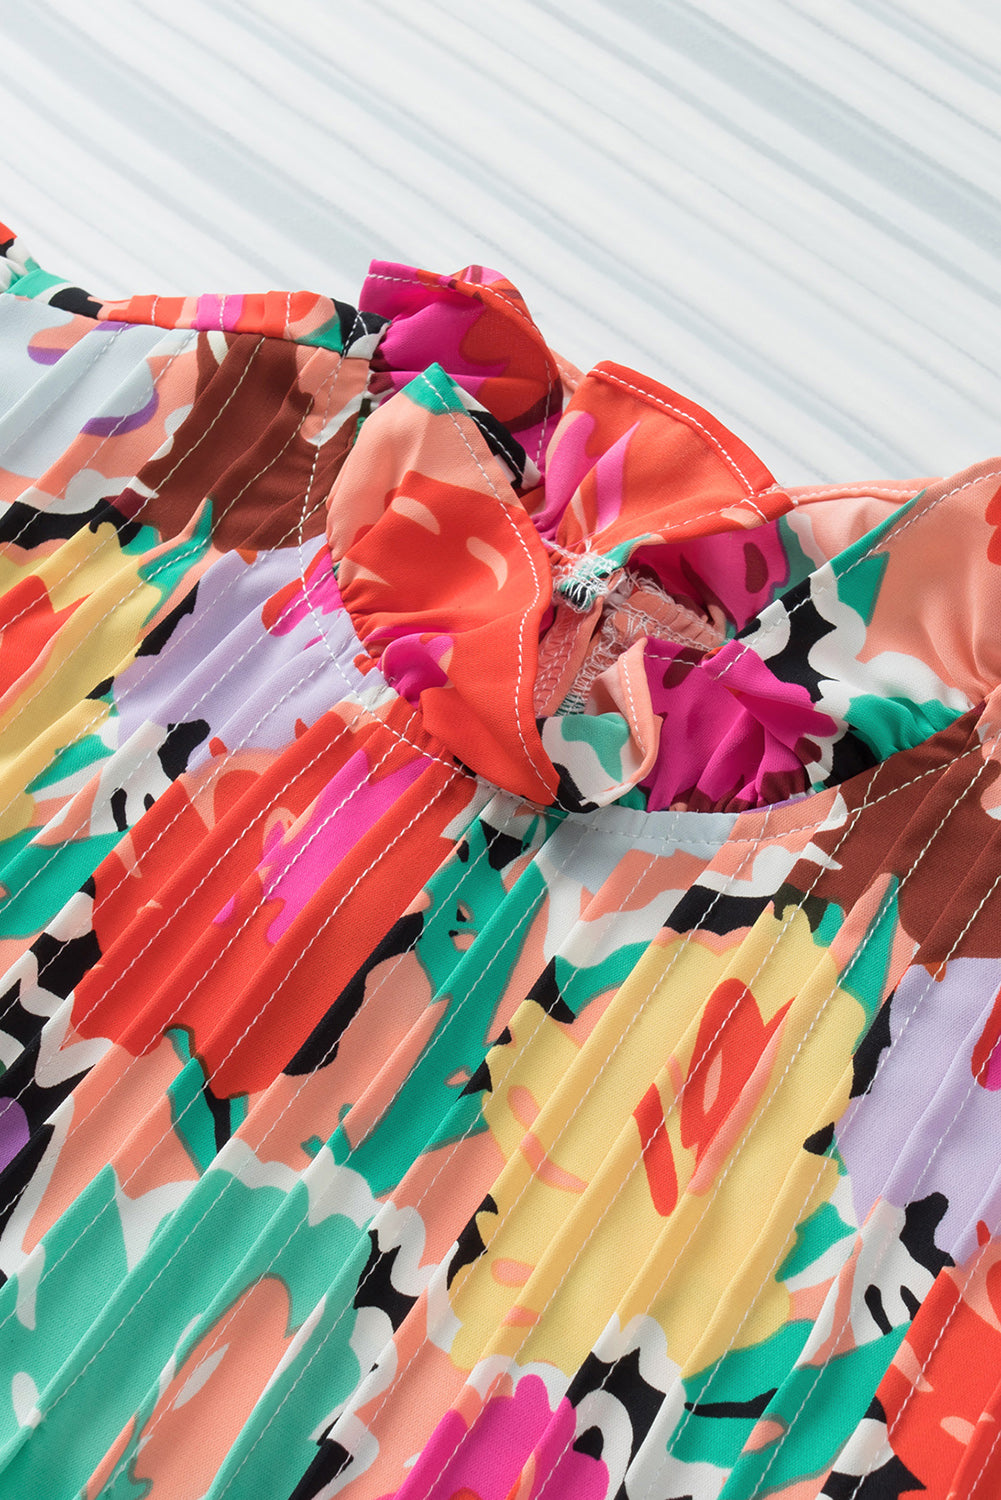 Mehrfarbige, plissierte Bluse mit abstraktem Blumendruck und Rüschenkragen